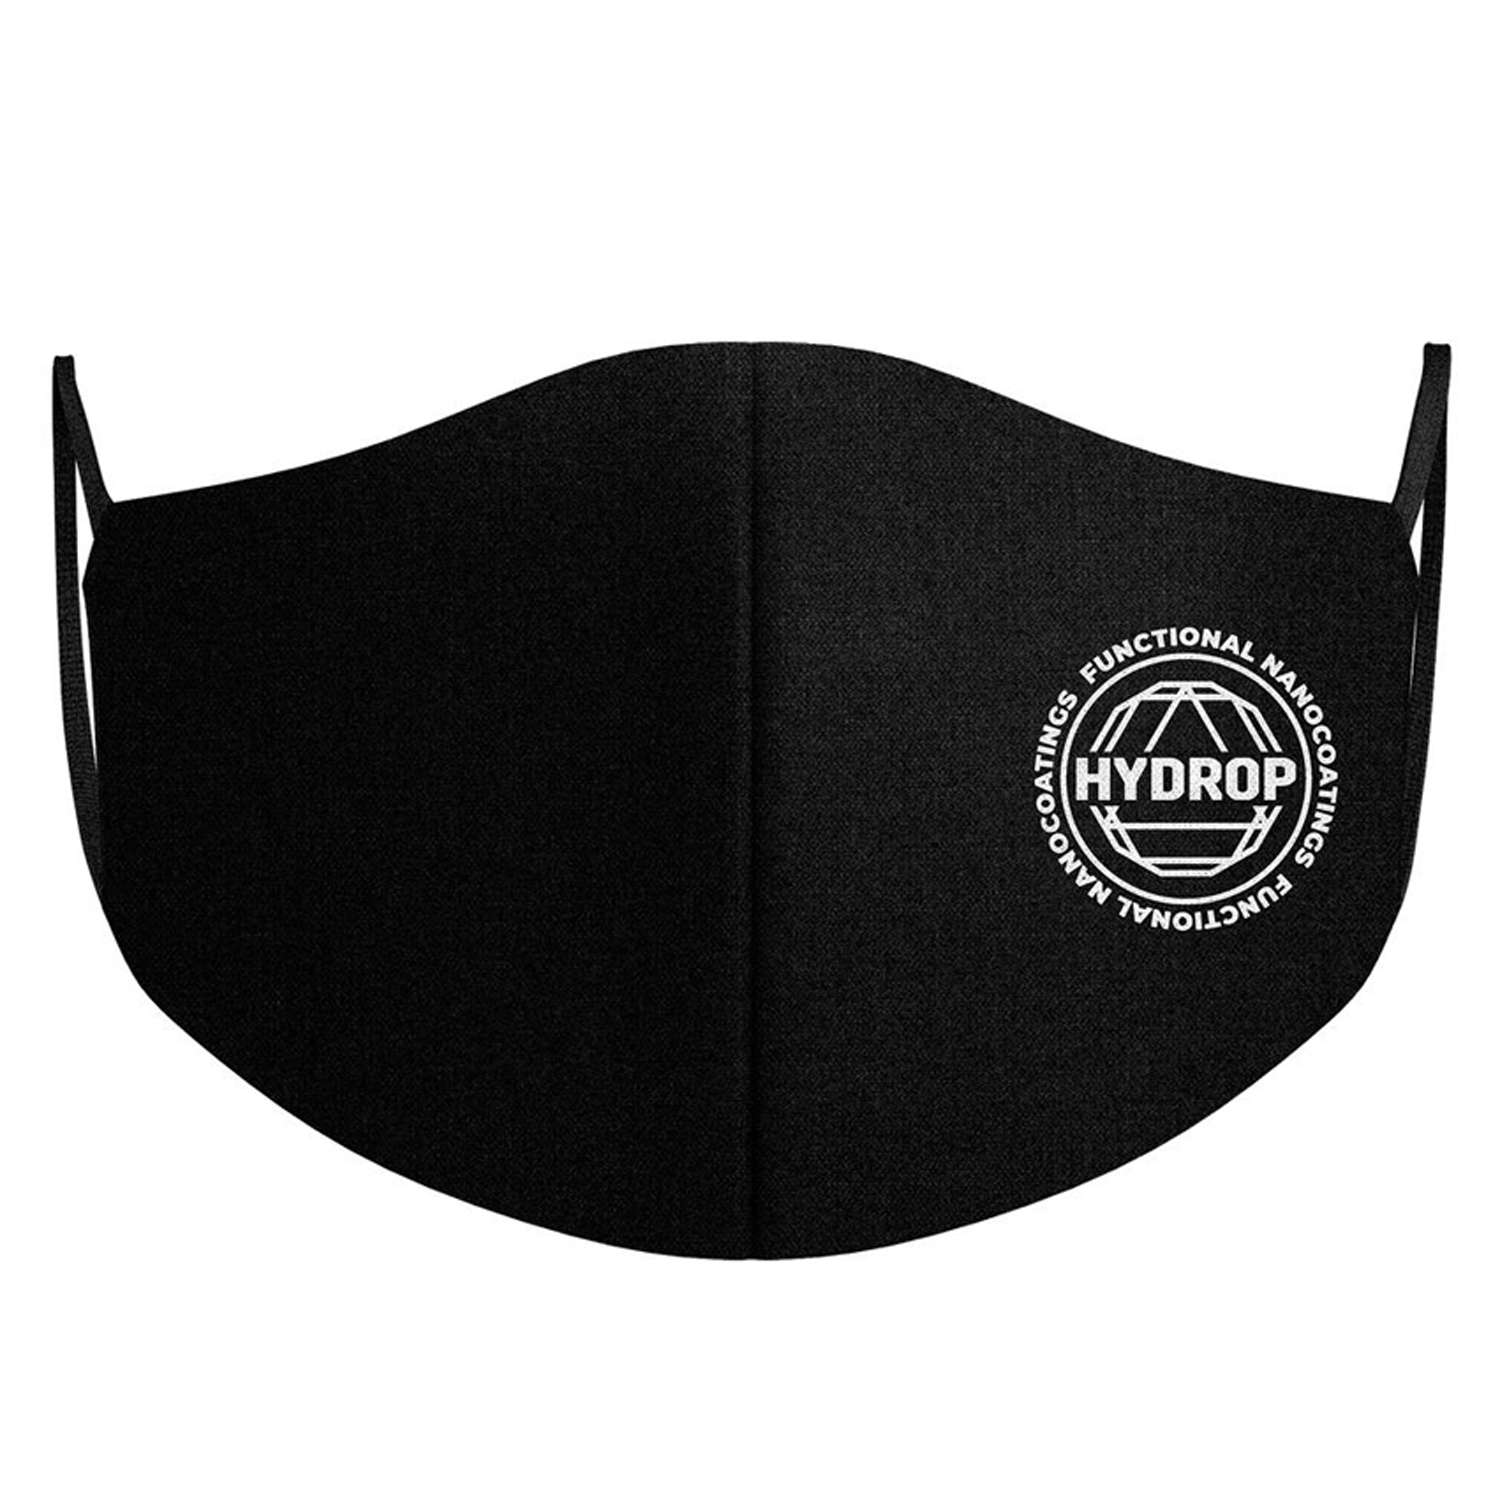 Многоразовая маска для лица HYDROP Respirator 800 black - фото 1